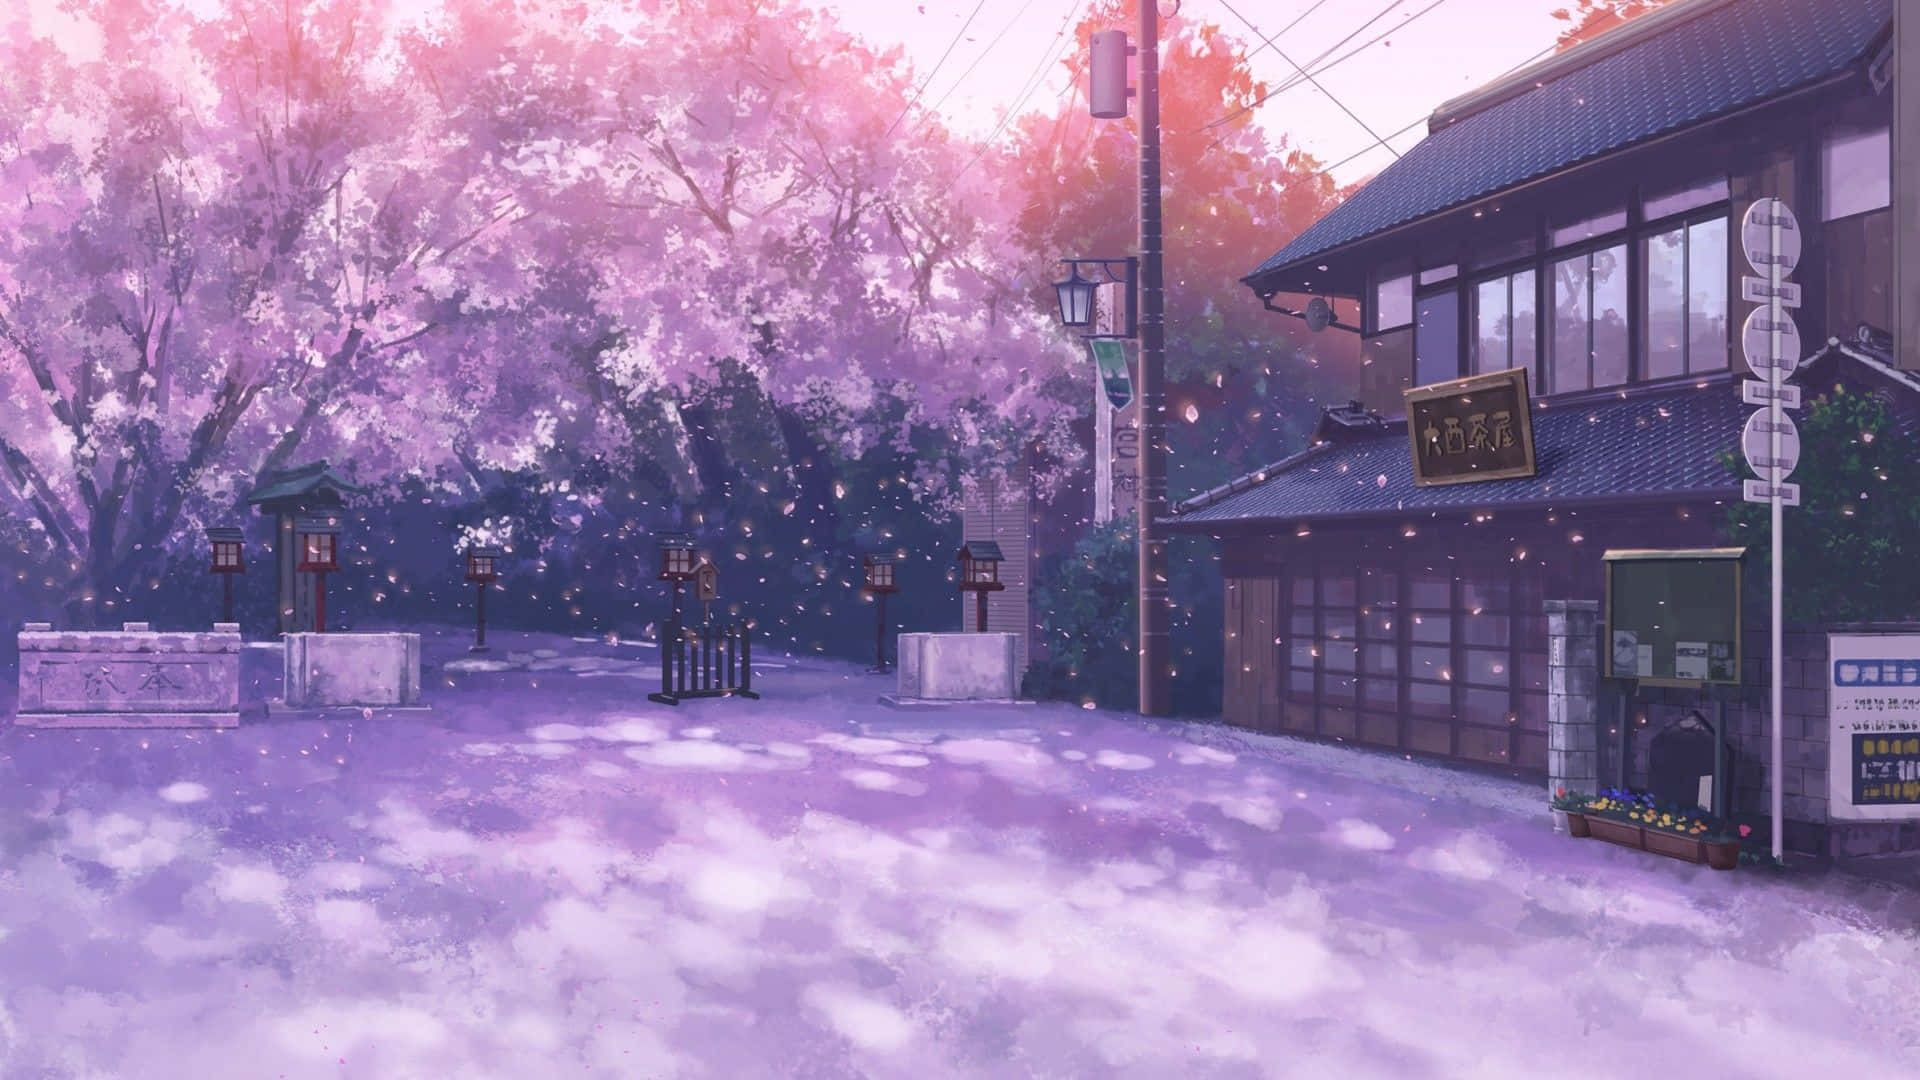 Samurai chiến đấu với nụ hoa anh đào, nhân vật anime tuyệt đẹp trong cảnh tuyệt đẹp trong hình nền Sakura Anime Wallpaper. Không gian yên bình của những bông hoa anh đào được kết hợp với phong cách anime đúng chất của Nhật Bản sẽ khiến bạn cảm thấy thư giãn và bình yên trên máy tính của mình.